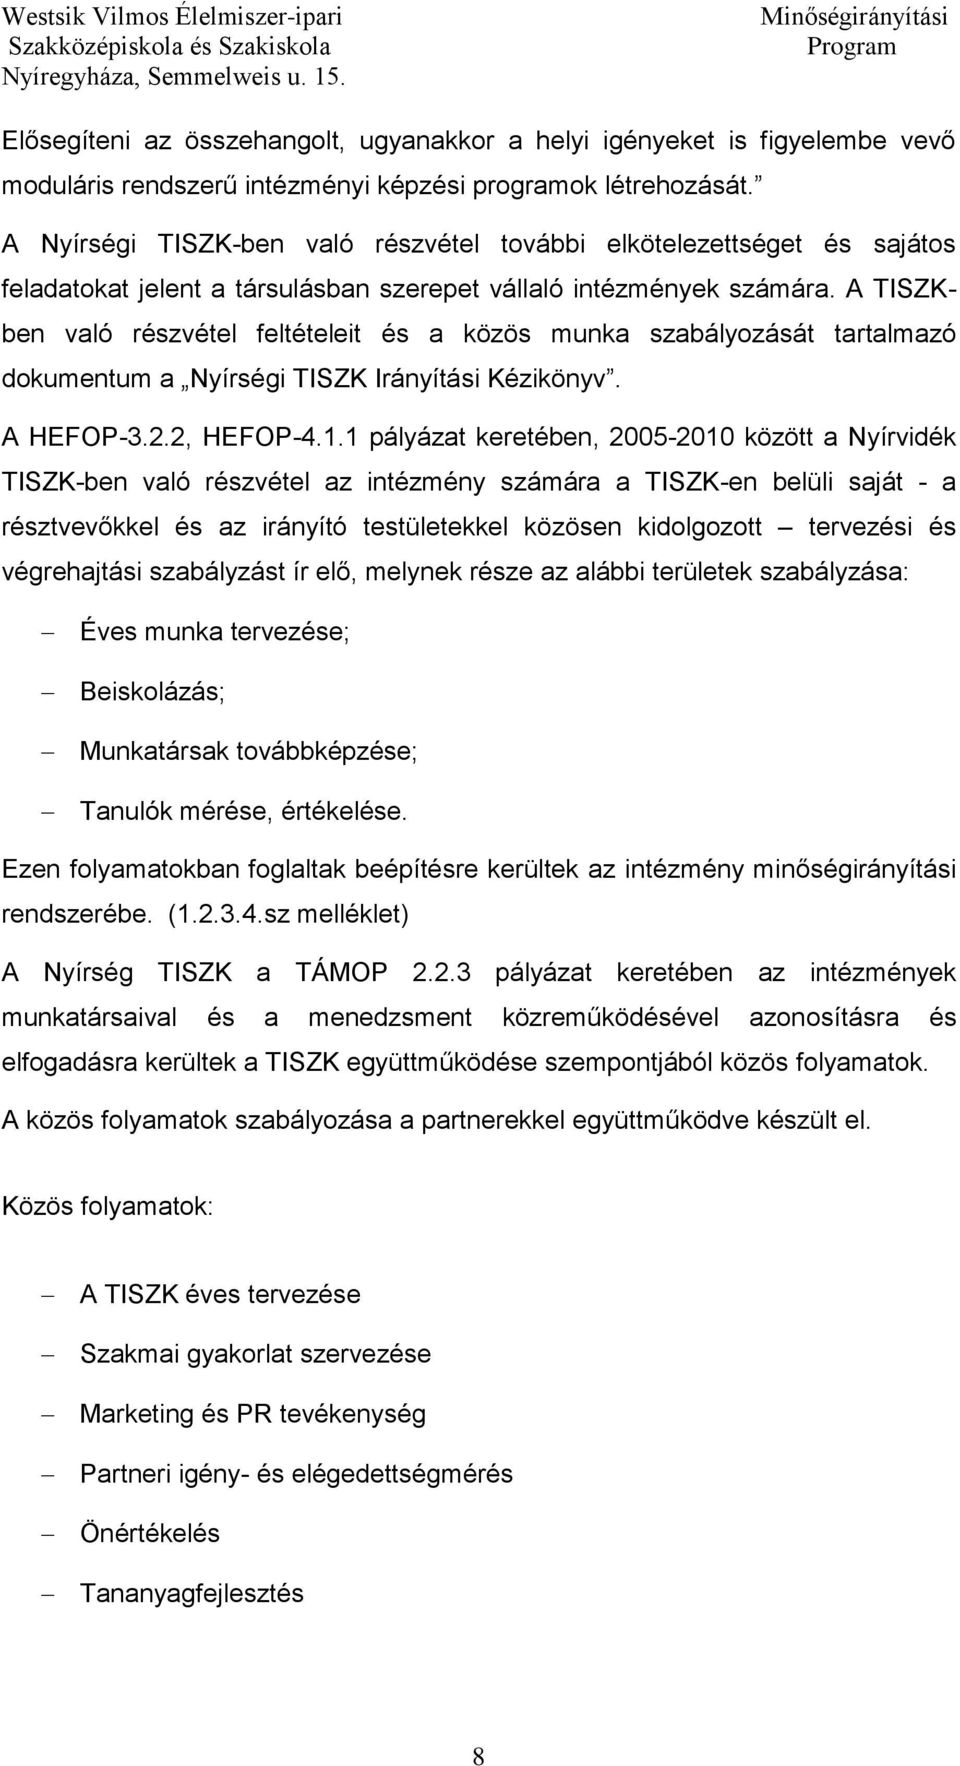 A TISZKben való részvétel feltételeit és a közös munka szabályozását tartalmazó dokumentum a Nyírségi TISZK Irányítási Kézikönyv. A HEFOP-3.2.2, HEFOP-4.1.